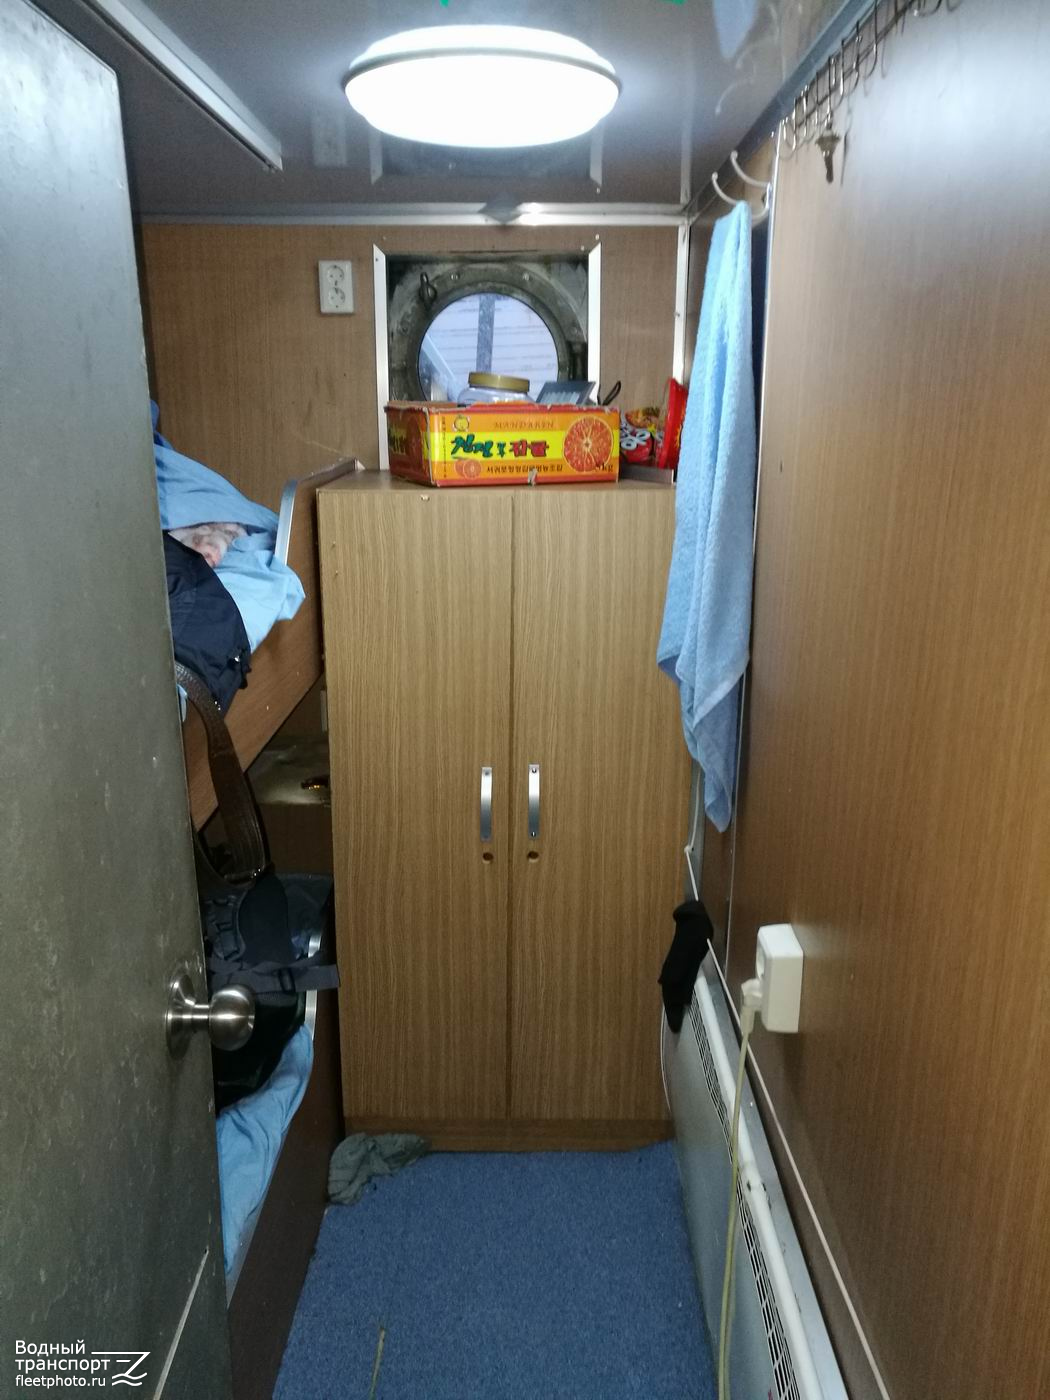 Островной-5. Internal compartments